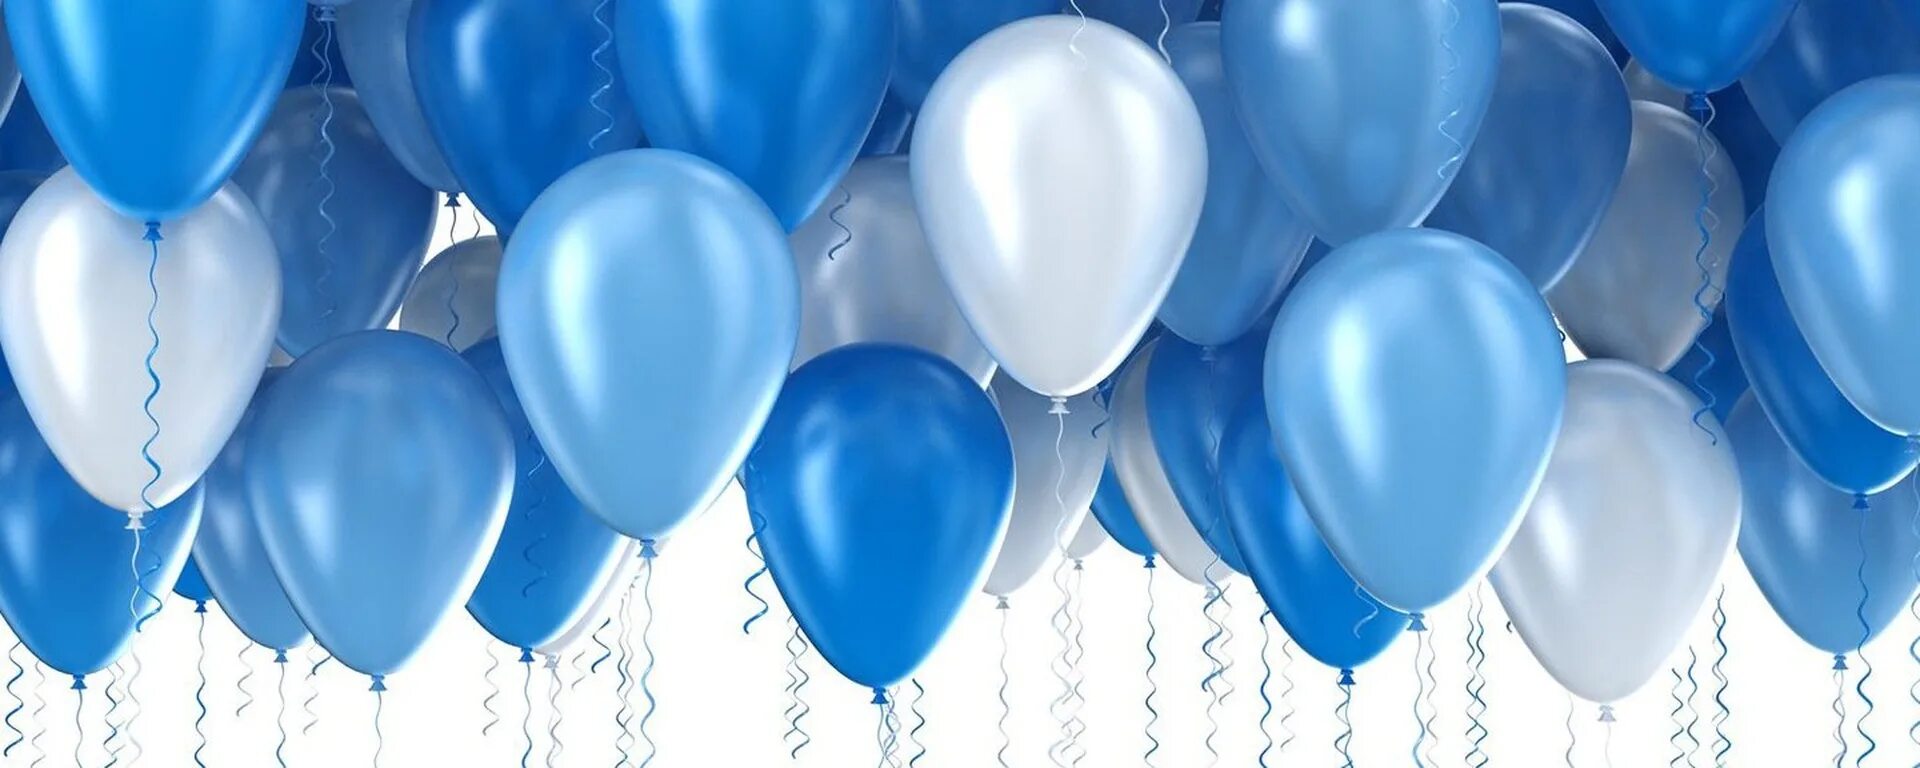 Аптека голубых шаров. Шарики голубые и белые. Бело голубые шары. Сине белые шары. Синий воздушный шарик.